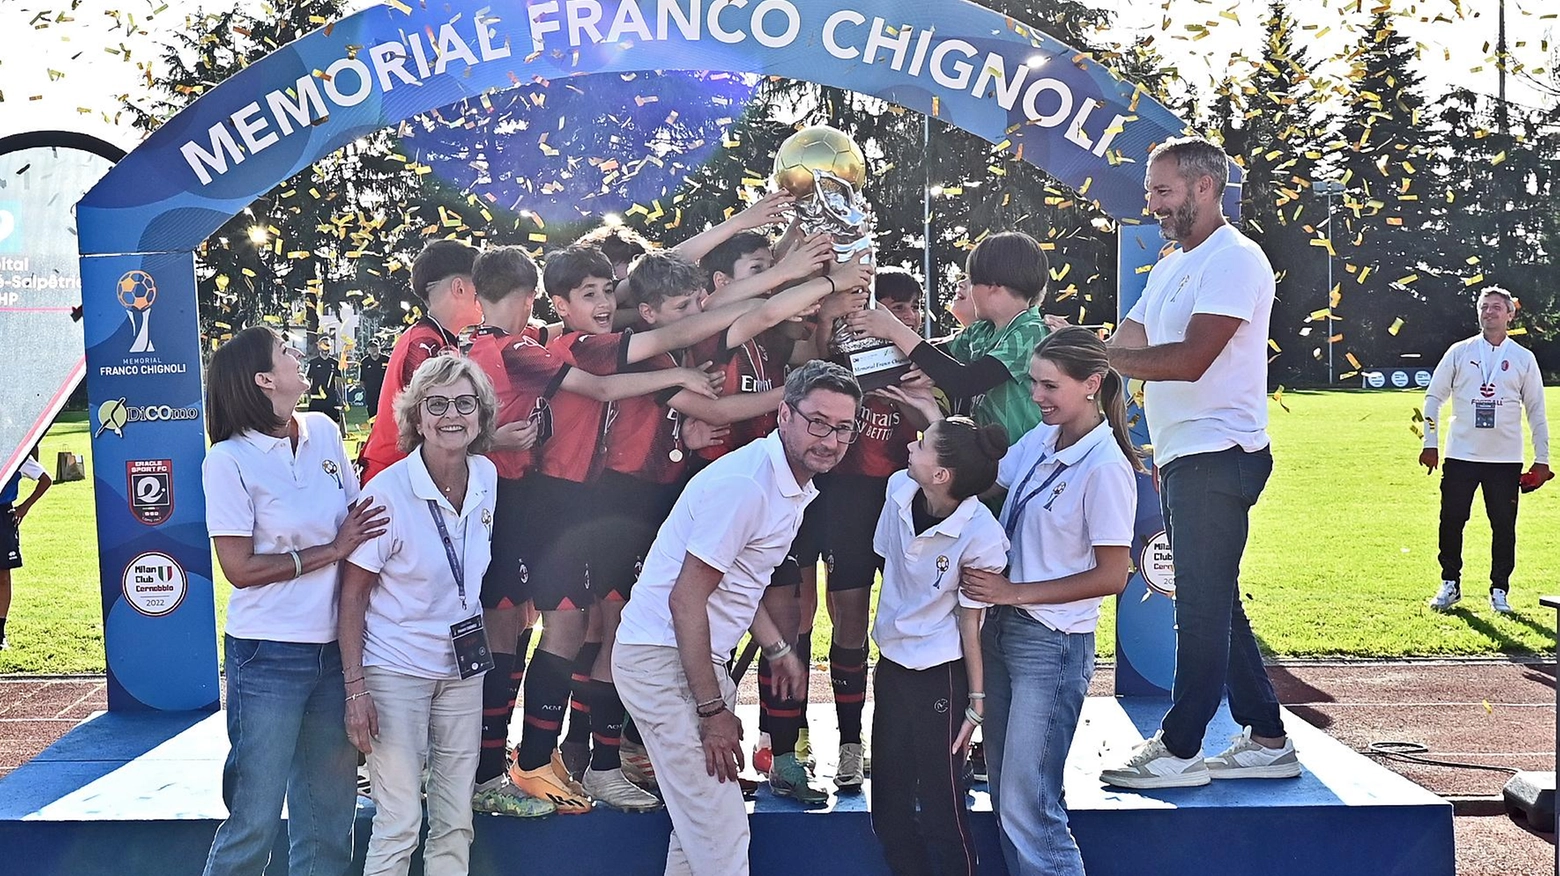 Torneo Franco Chignoli. Vince la beneficenza con tanti ex campioni